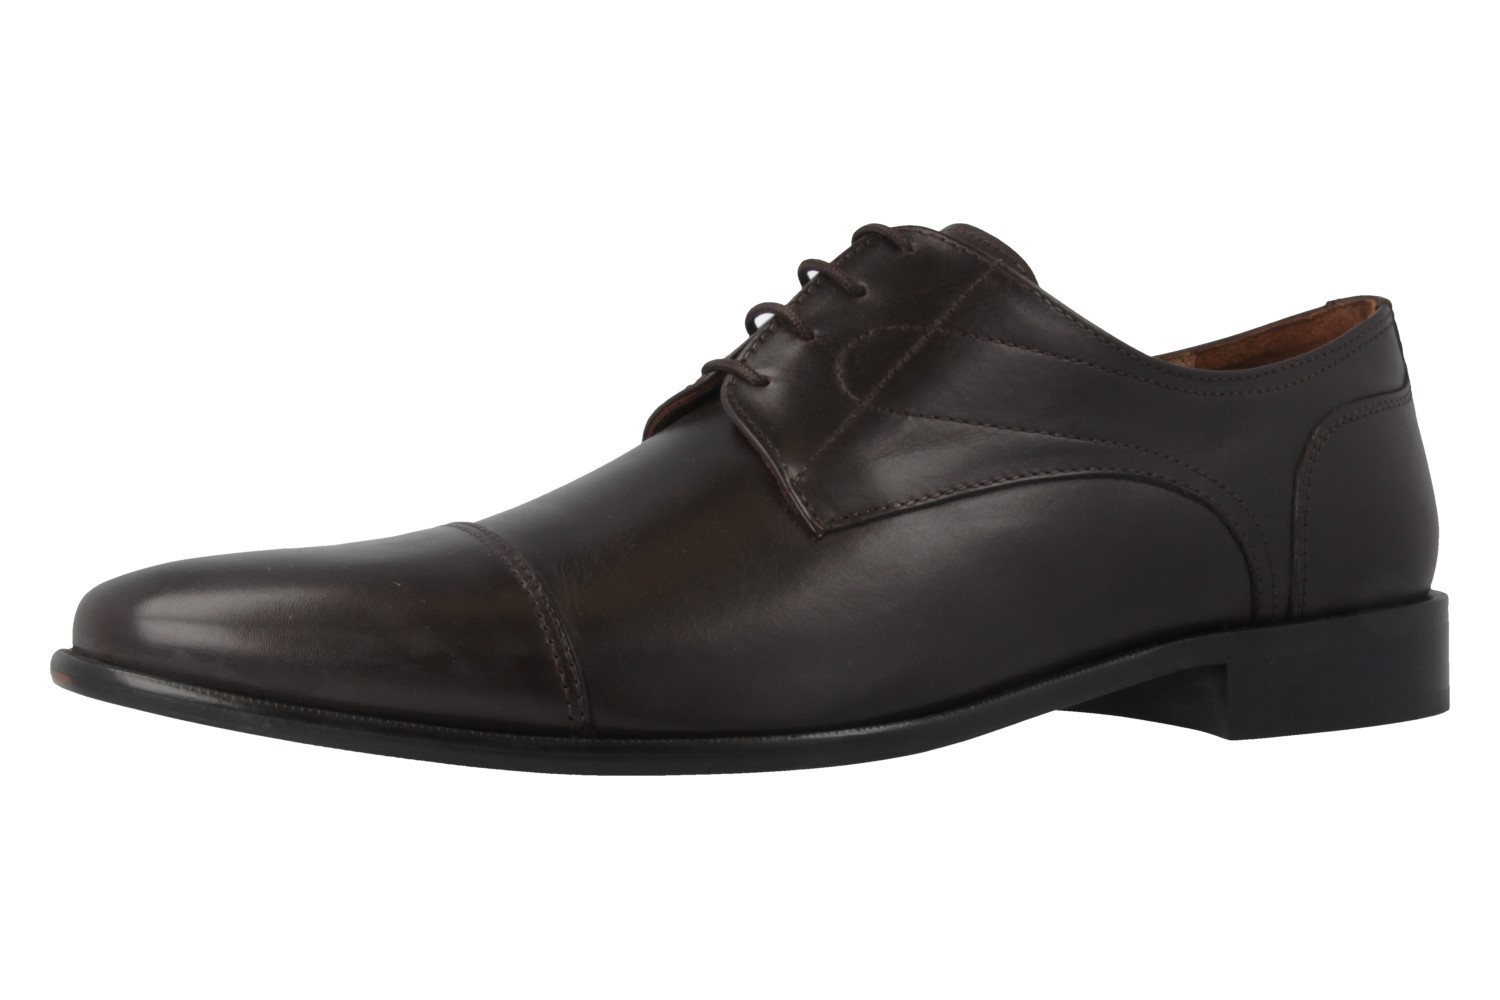 Manz Business-Schuhe in Übergrößen Braun 113033-12-187 große Herrenschuhe